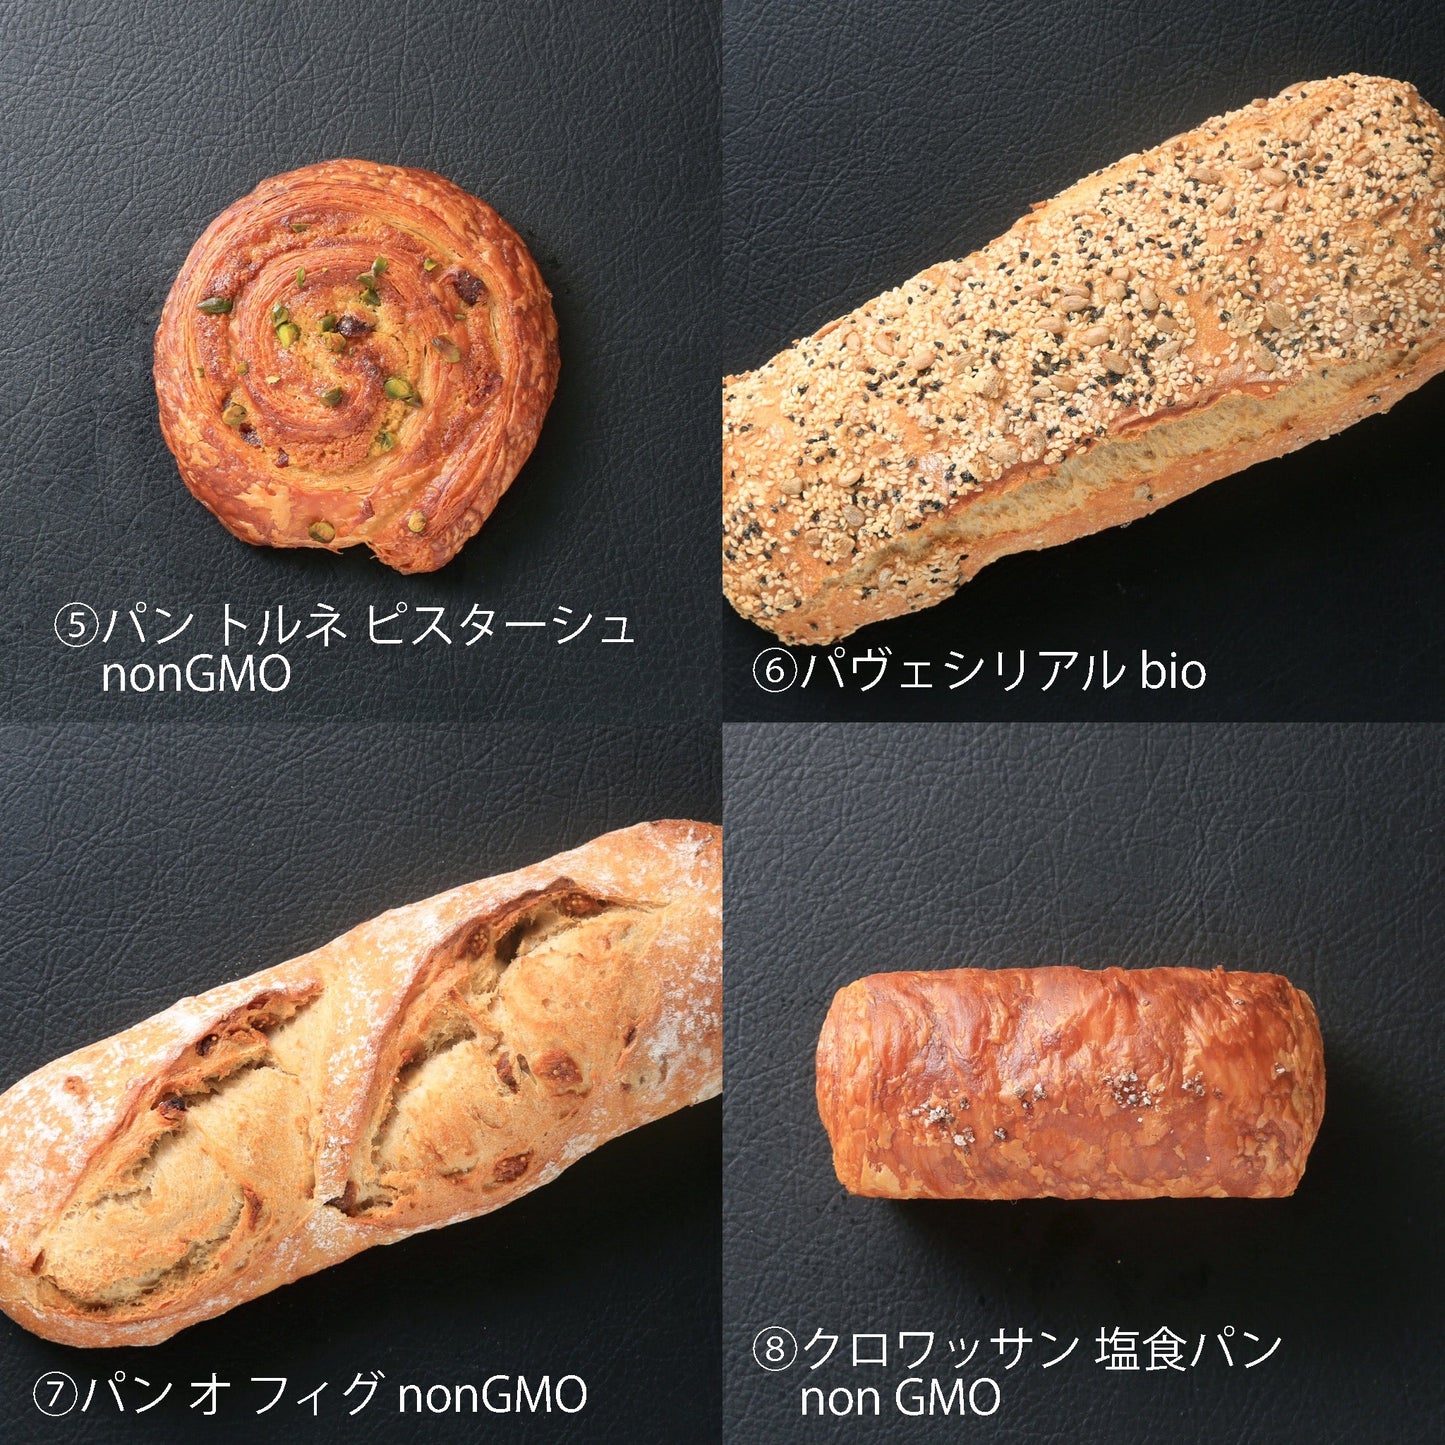 パン説明2